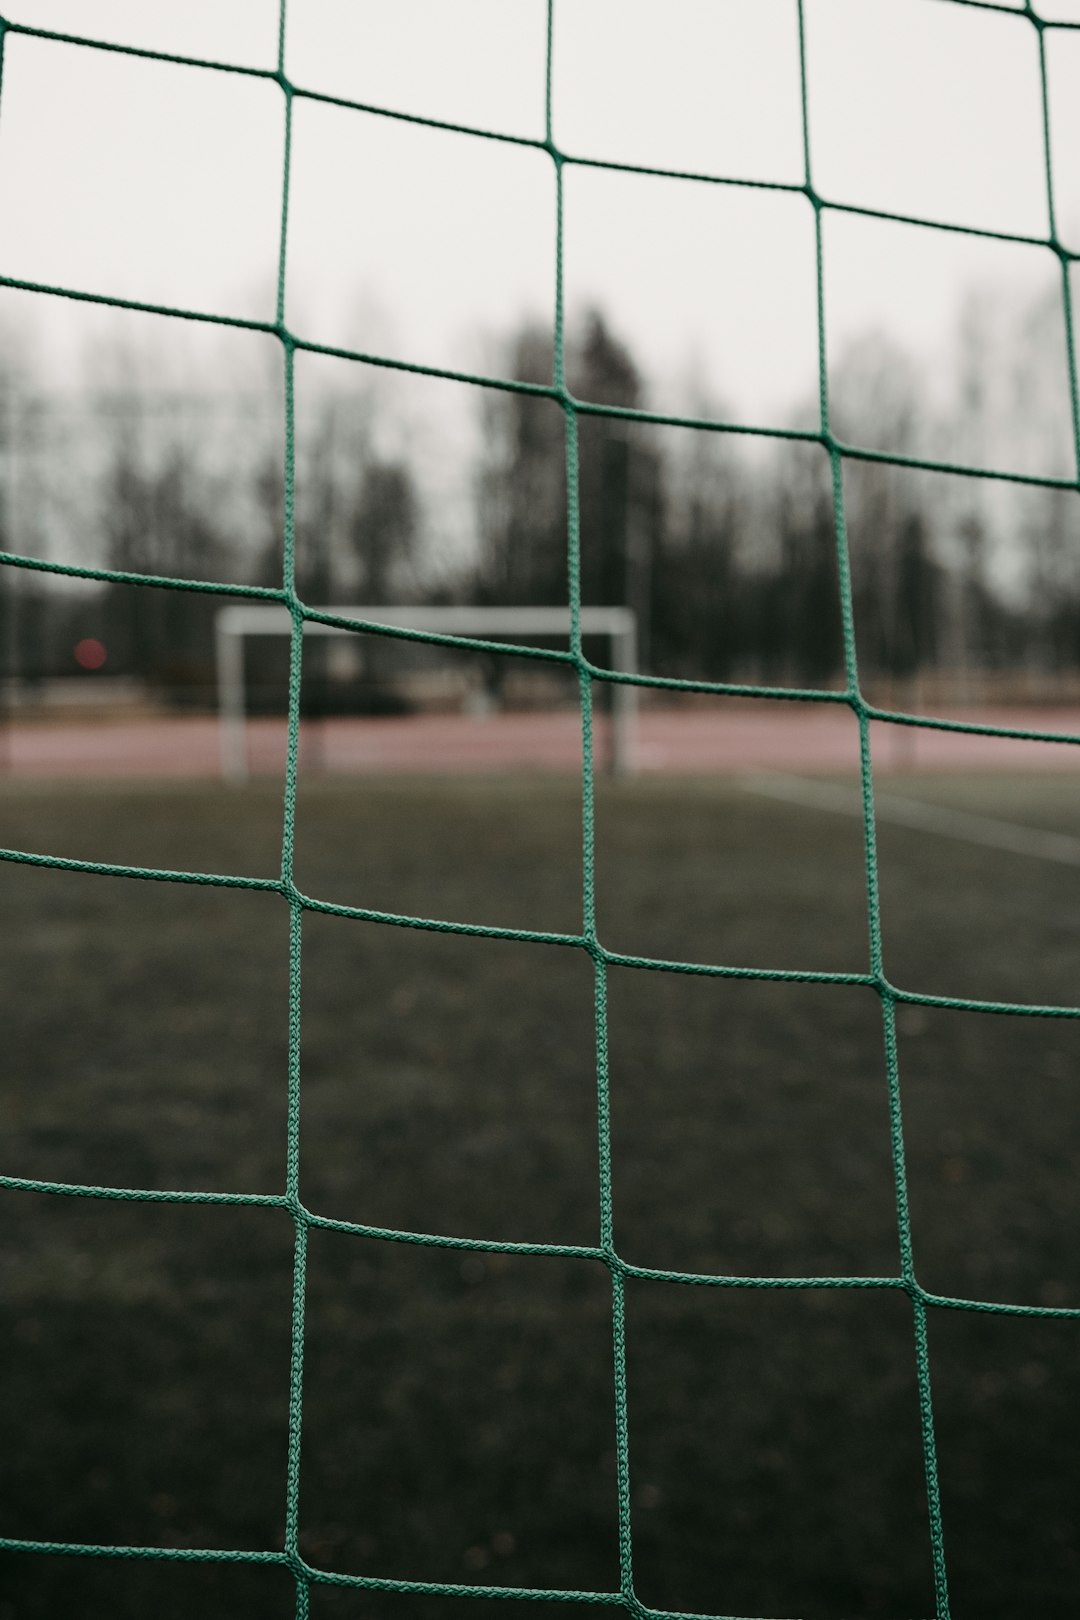 green soccer goal net during daytime